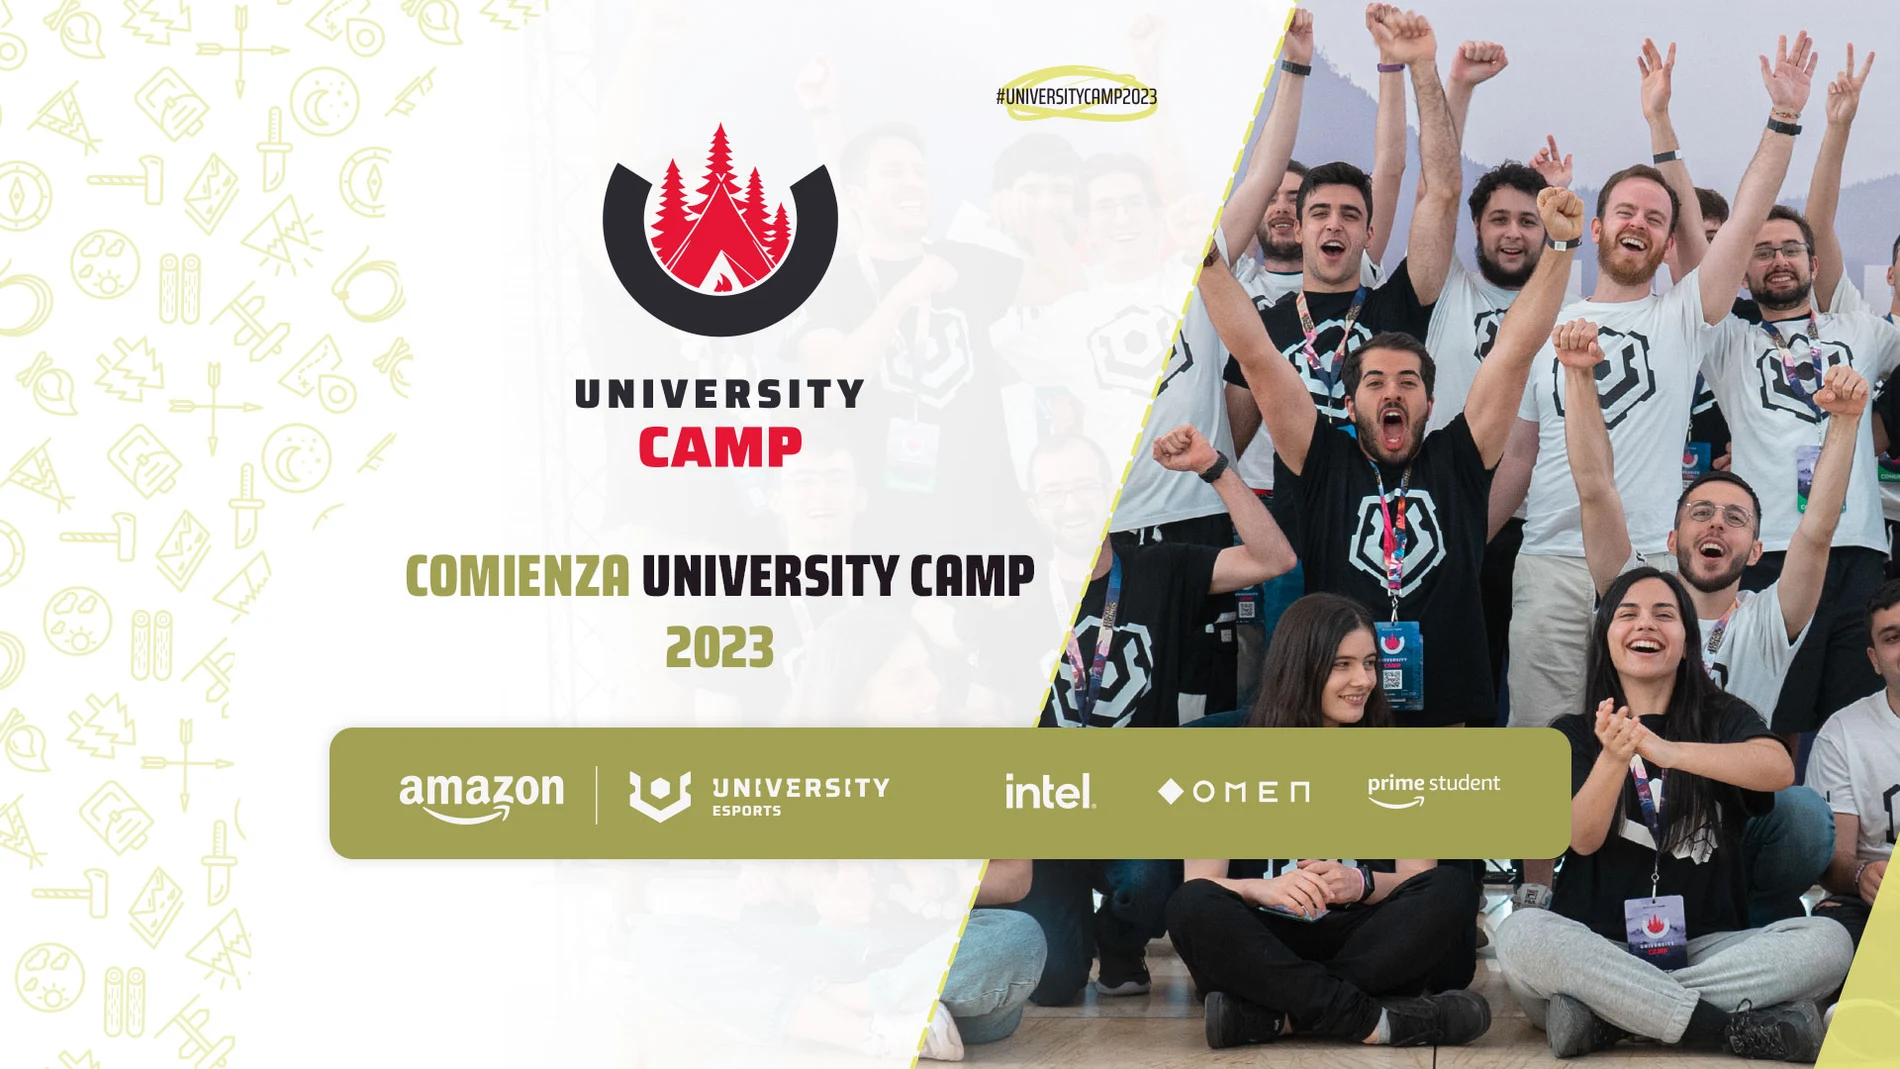 22 universidades participarán en la UNIVERSITY Camp de Alicante